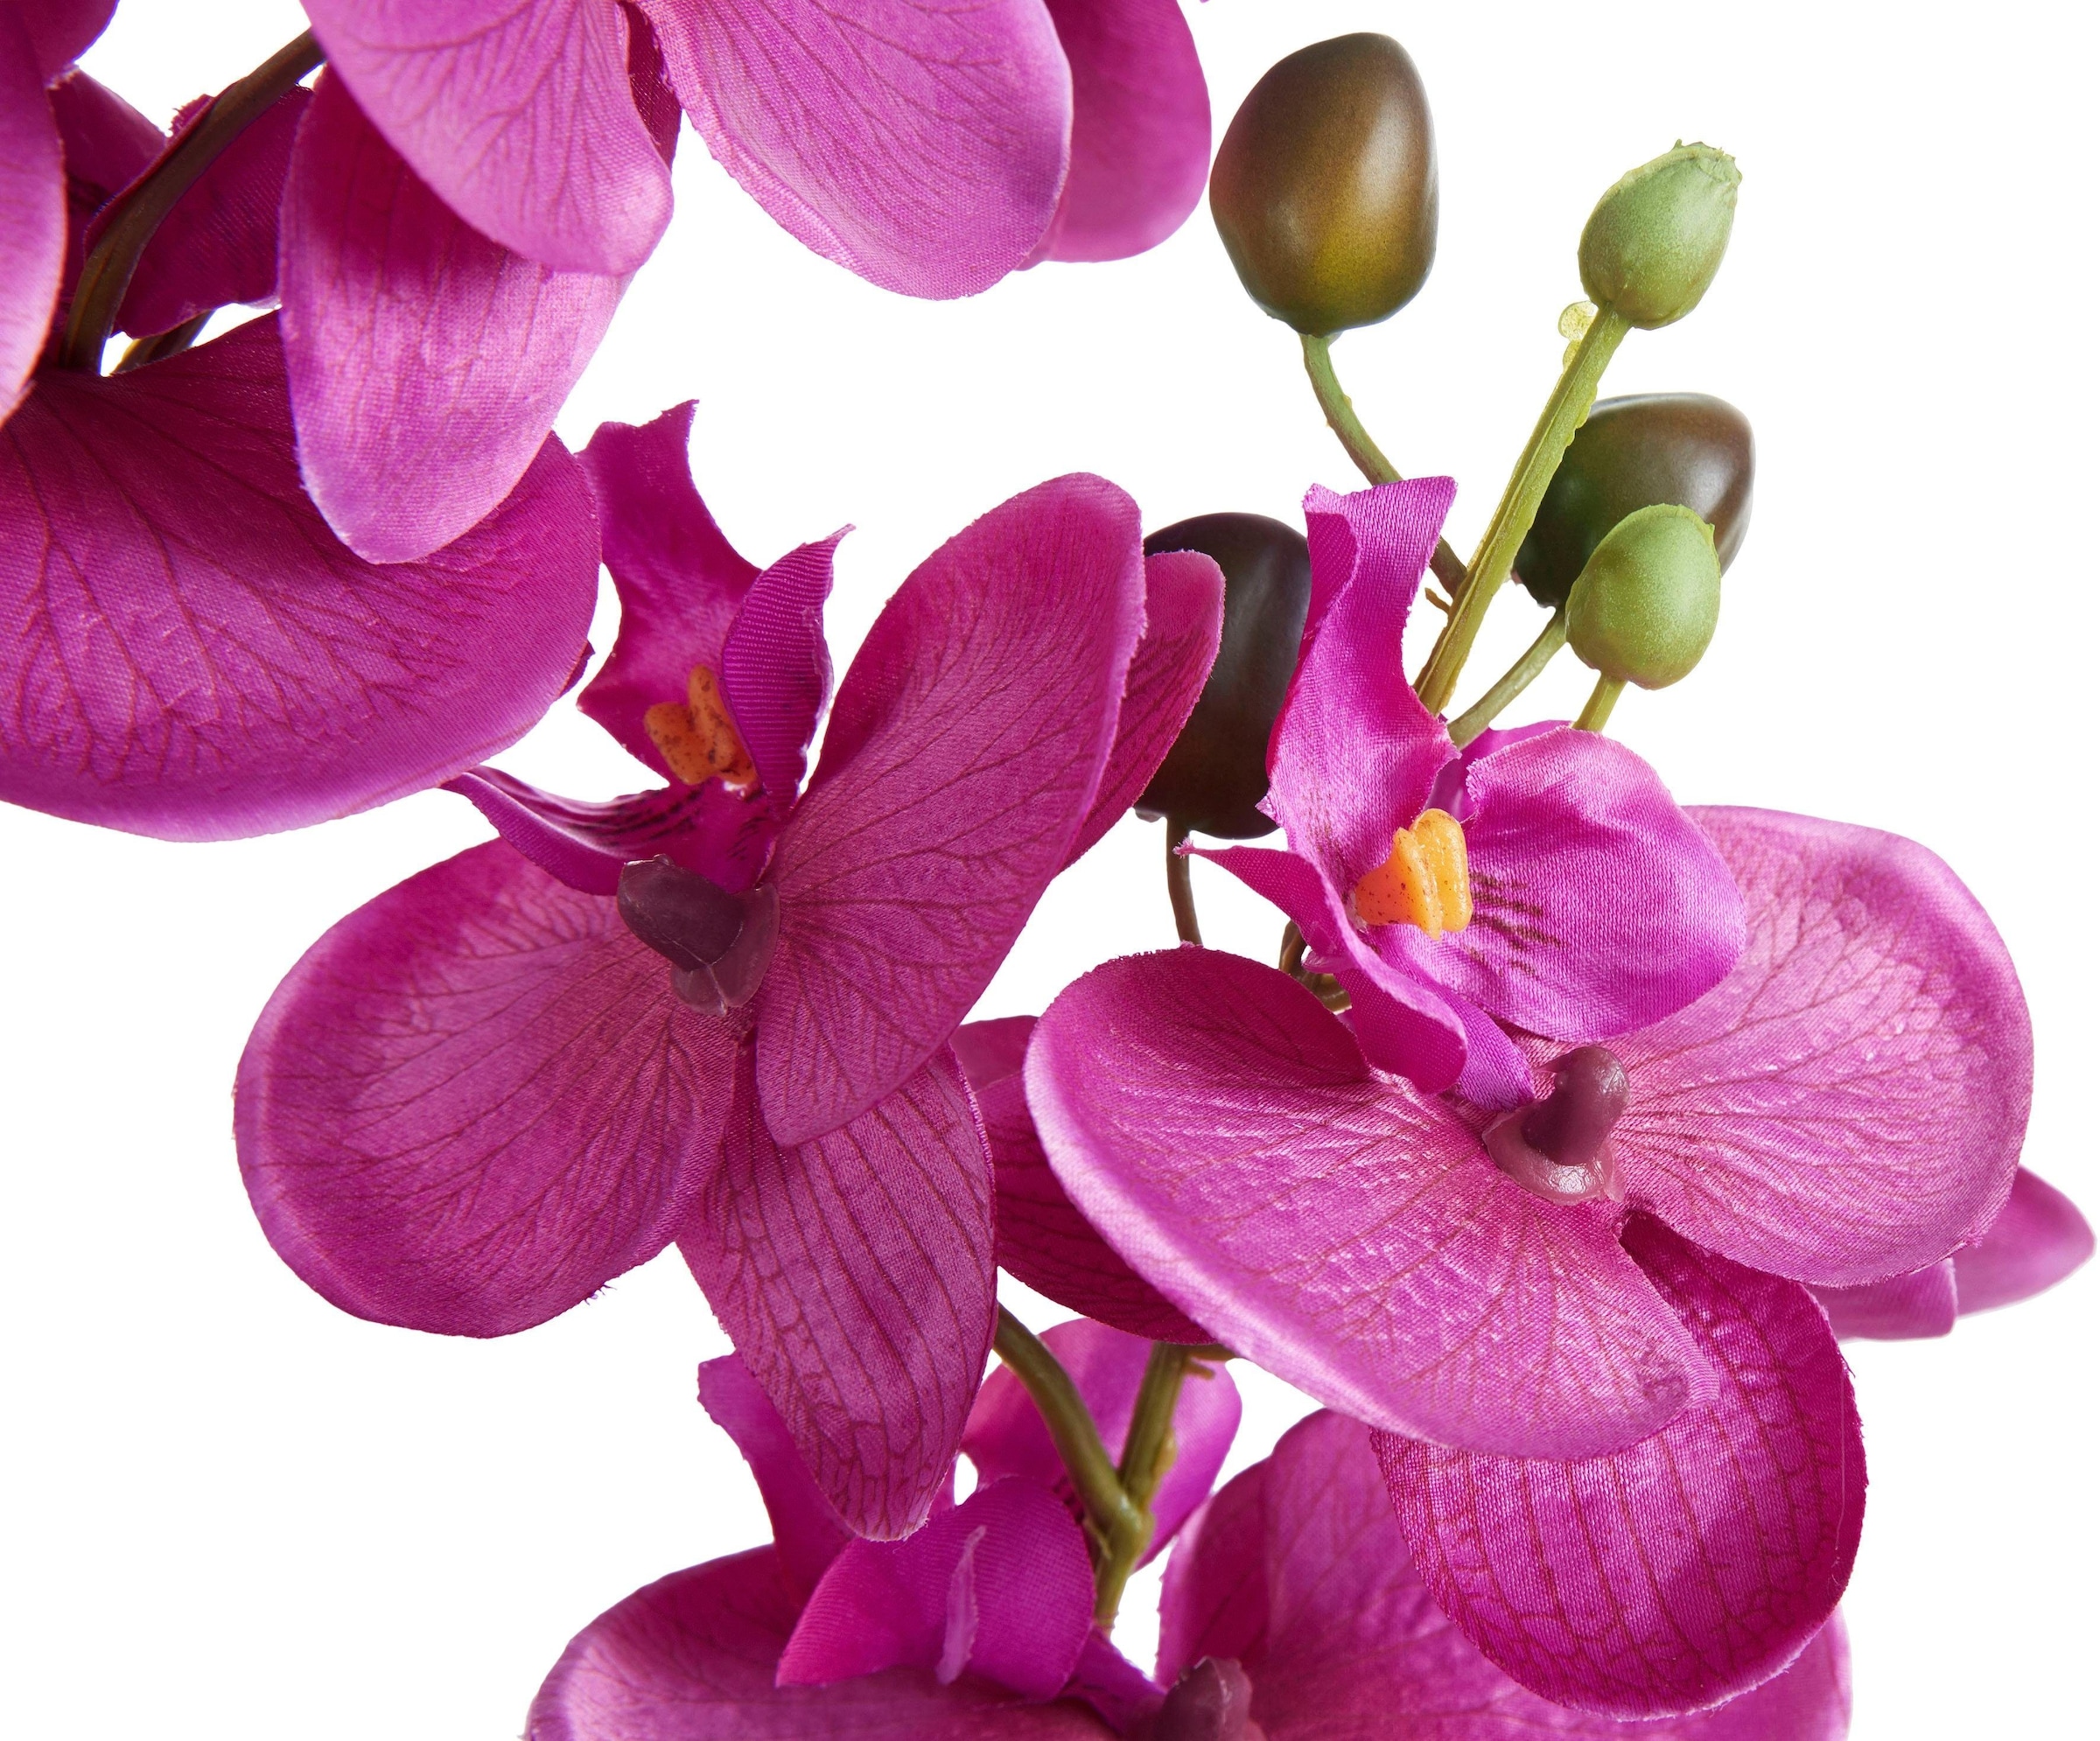 Creativ green Kunstpflanze »Orchidee« kaufen | BAUR